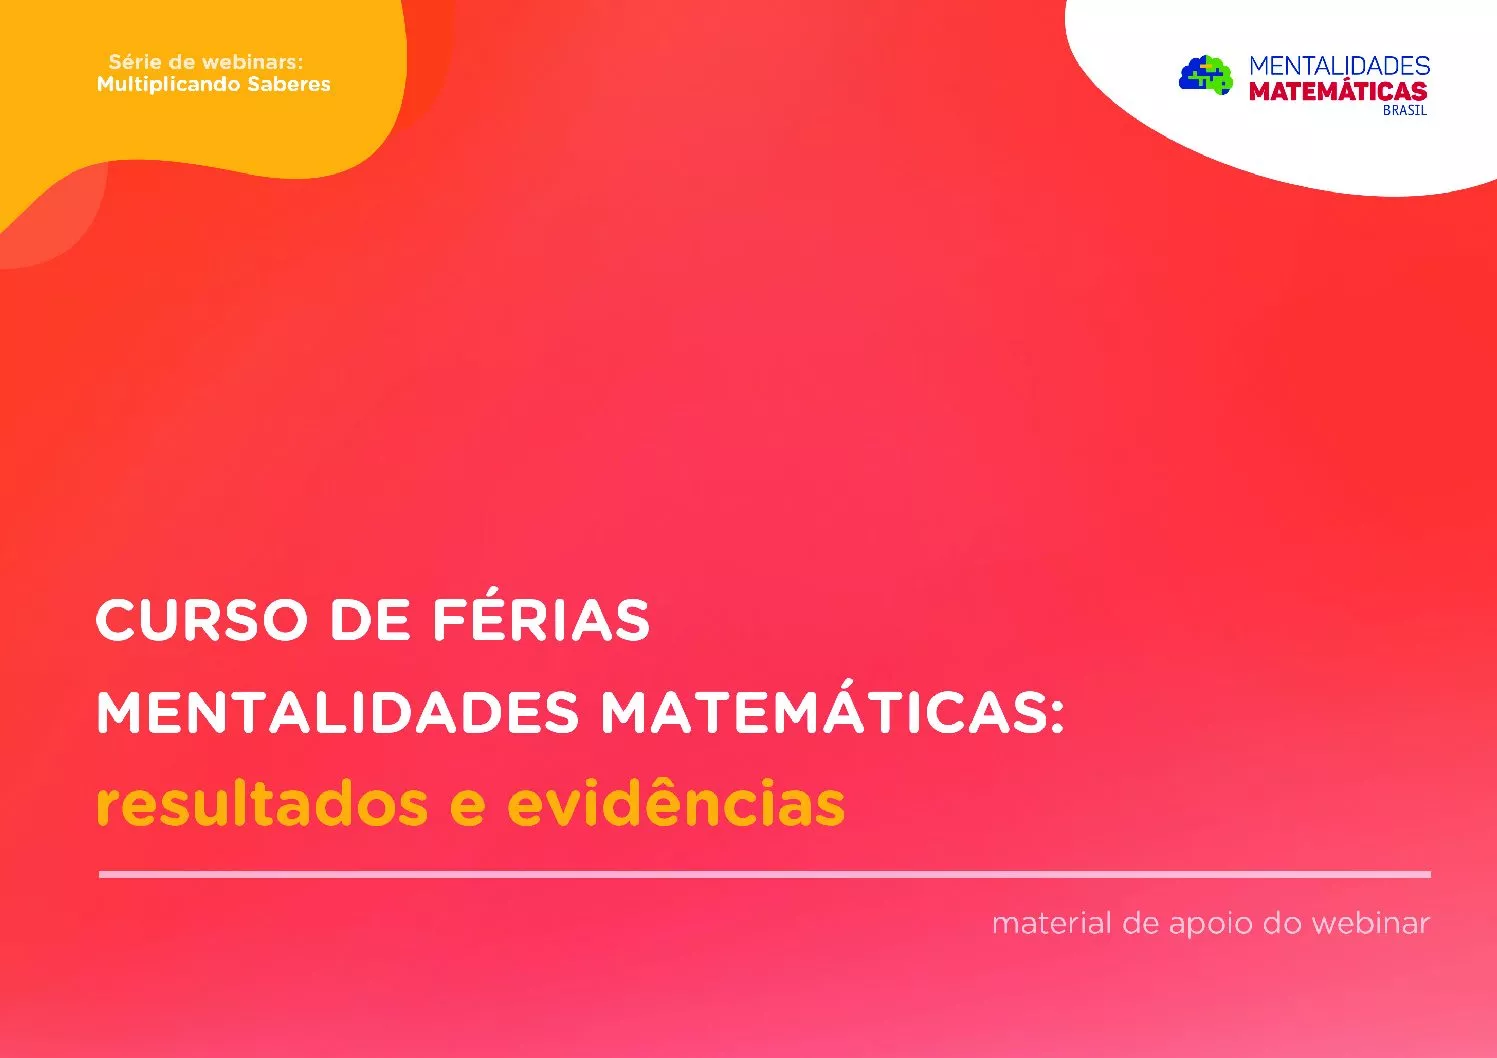 "Curso de Férias Mentalidades Matemáticas: resultados e evidências"